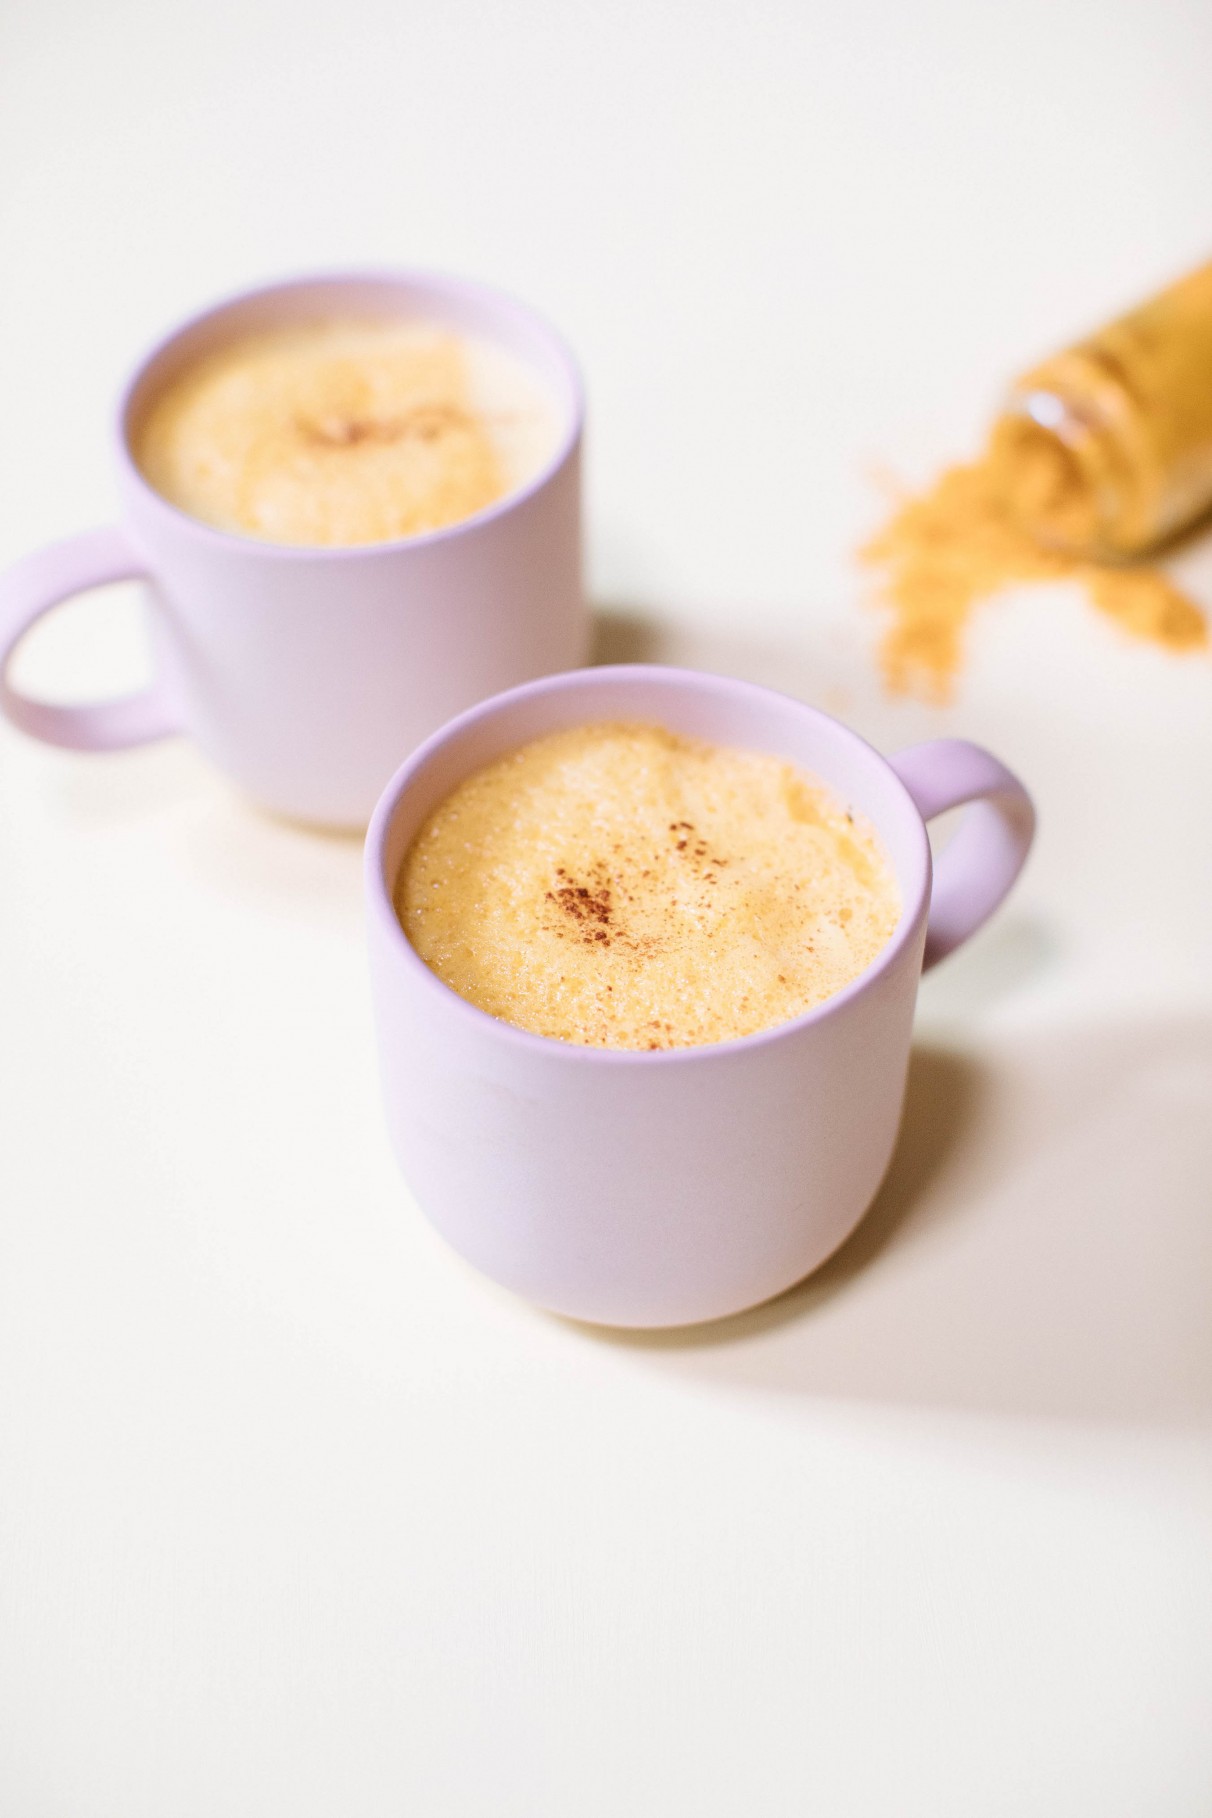 Coconut Golden Milk Recipe With Antioxidants